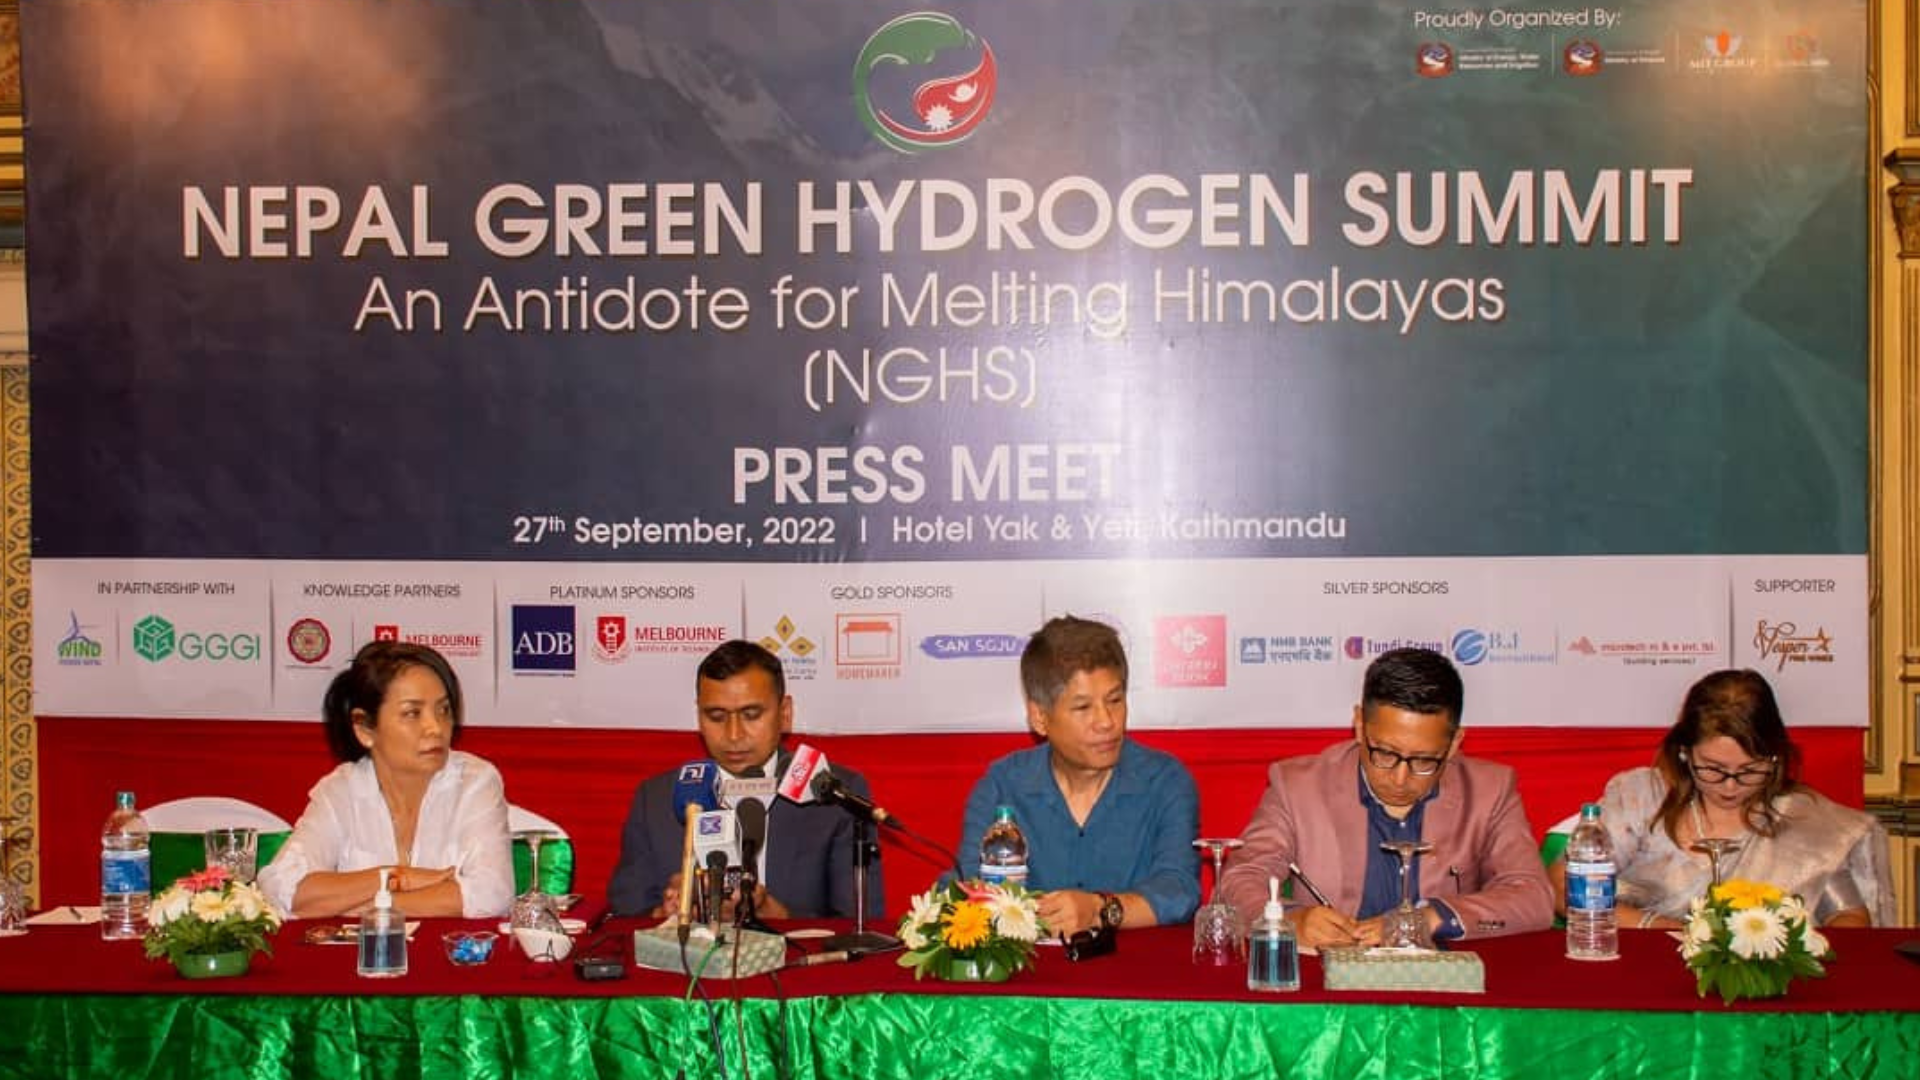 हरित हाइड्रोजनमा लगानी भित्र्याउन ‘नेपाल ग्रीन हाइड्रोजन समीट’ गर्दैछाैंः घले